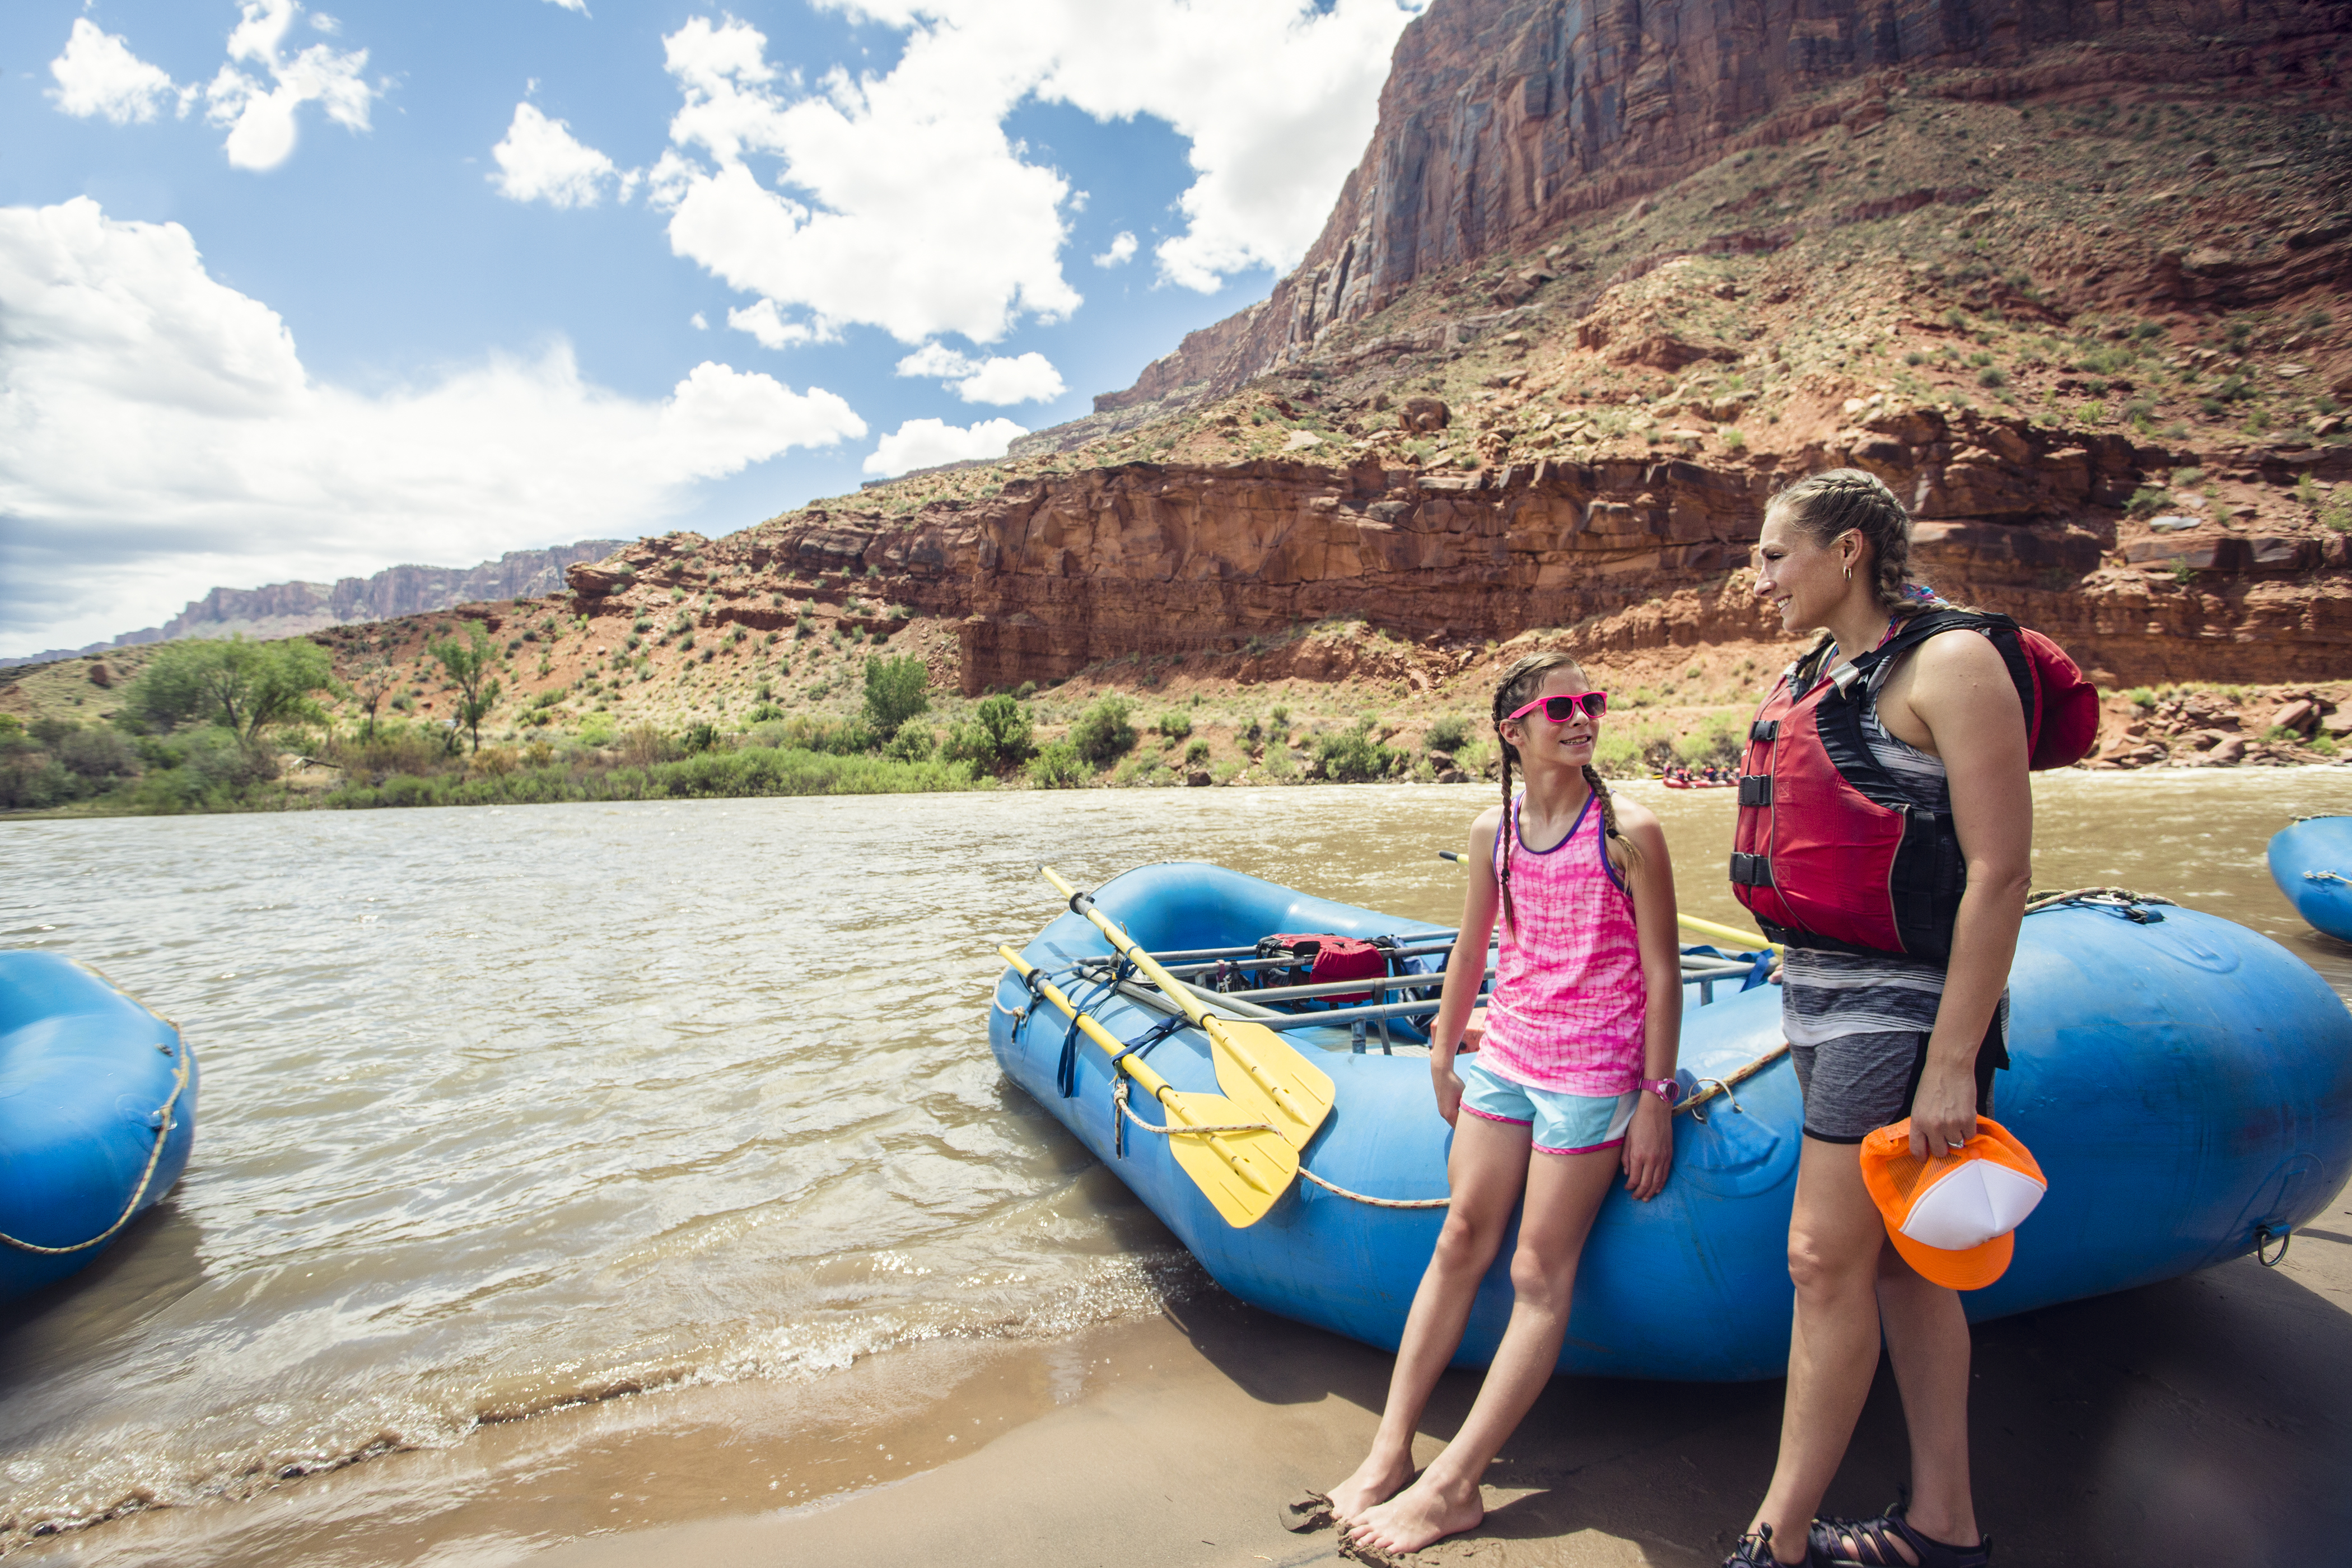 Uma mulher e uma jovem em pé perto do rio colorado | Fonte: Shutterstock